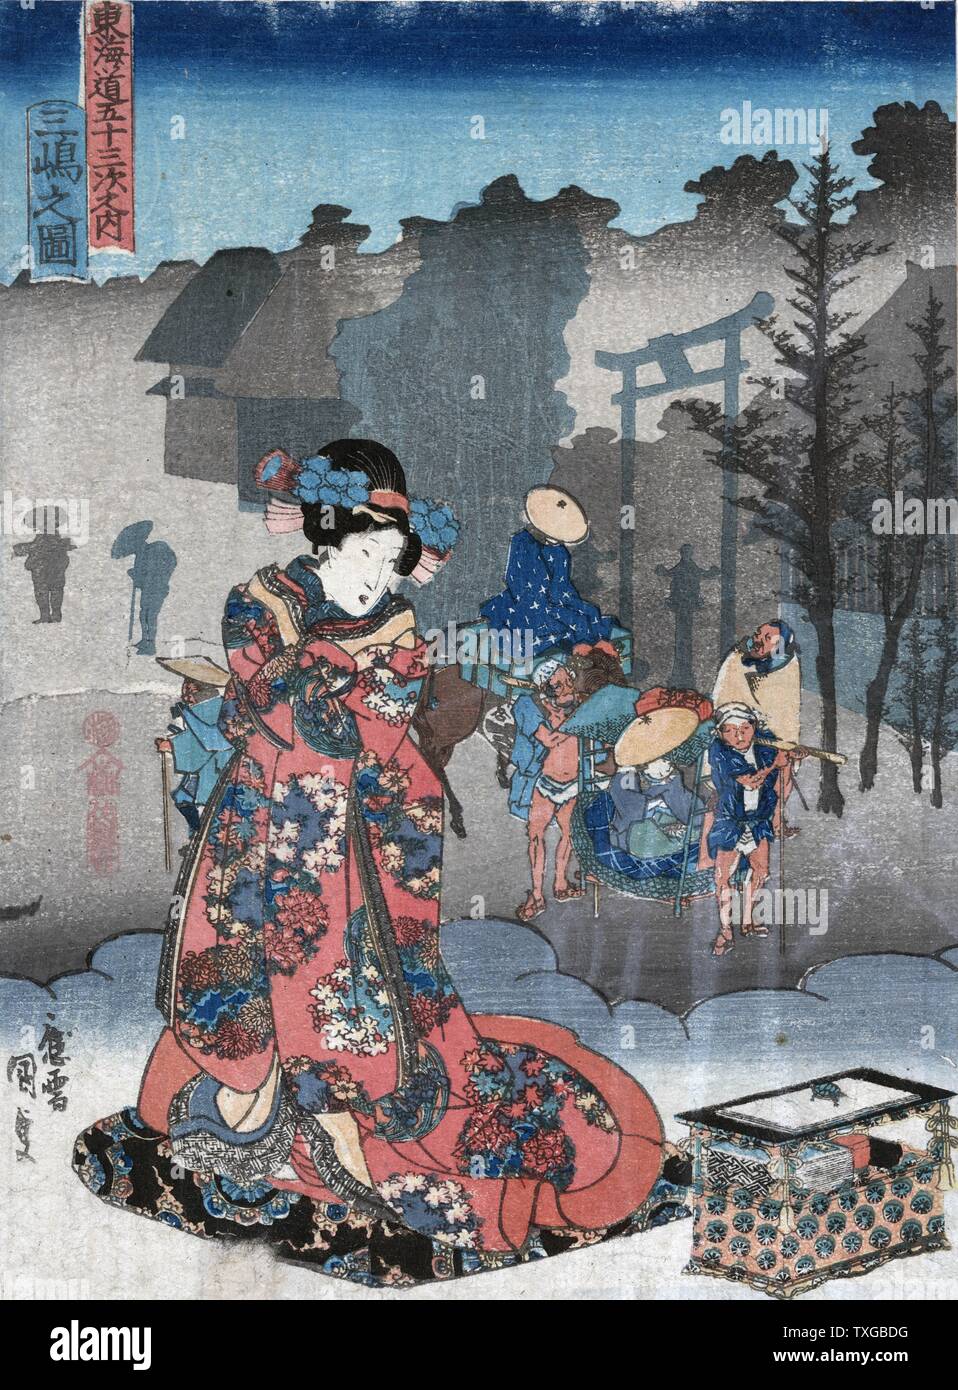 Anzeigen von Mishima. Drucken zeigt eine Frau, die neben einer Box auf einer Wolke beobachten die Träger, die eine Person in einer Sänfte, wie sie die Mishima Schrein, die 12. Station auf der Tokaido Straße. Stockfoto